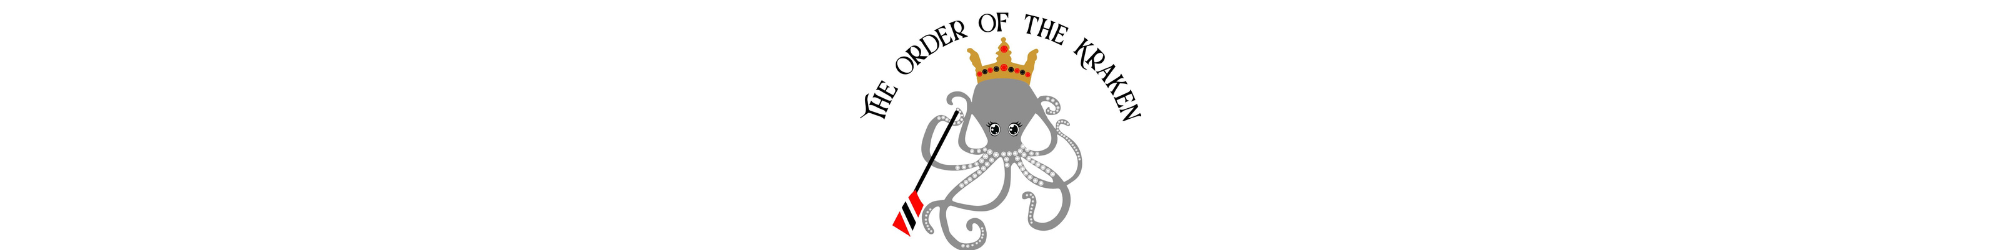 Order of the Kraken